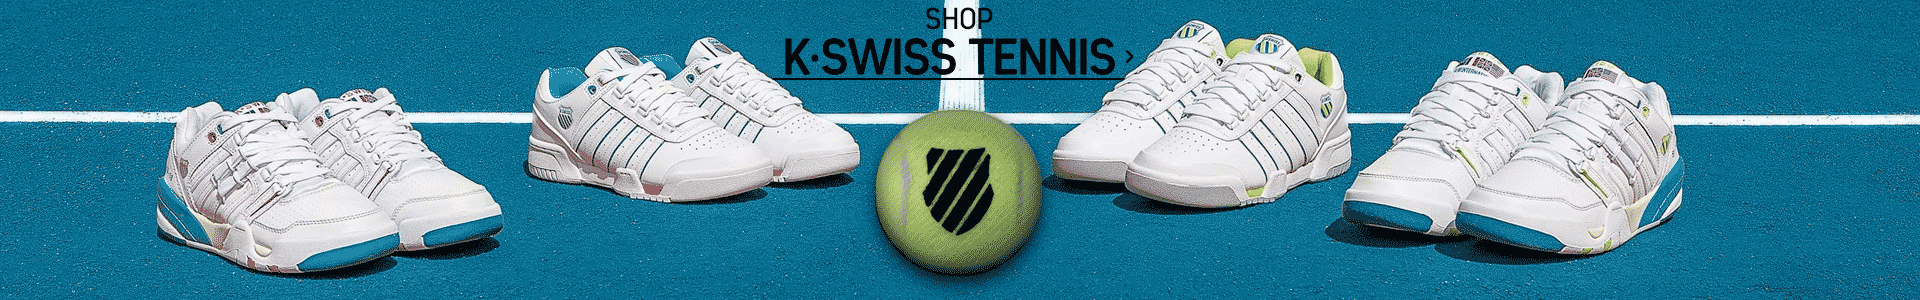 KSwiss Tennis Banner